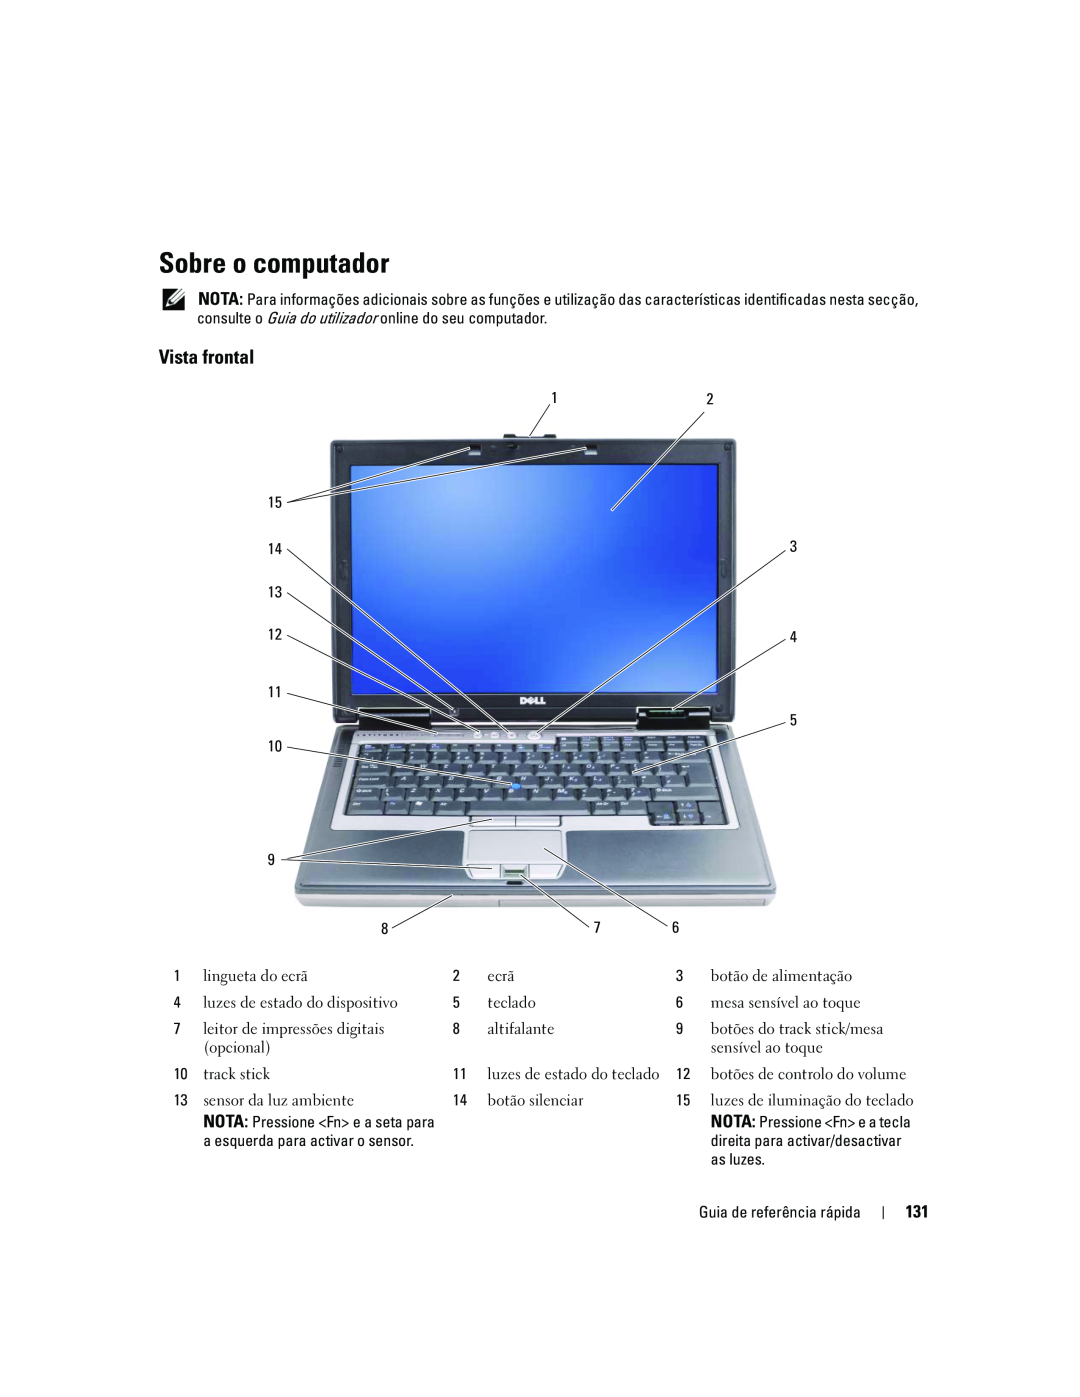 Dell ATG D620 manual Sobre o computador, Vista frontal 